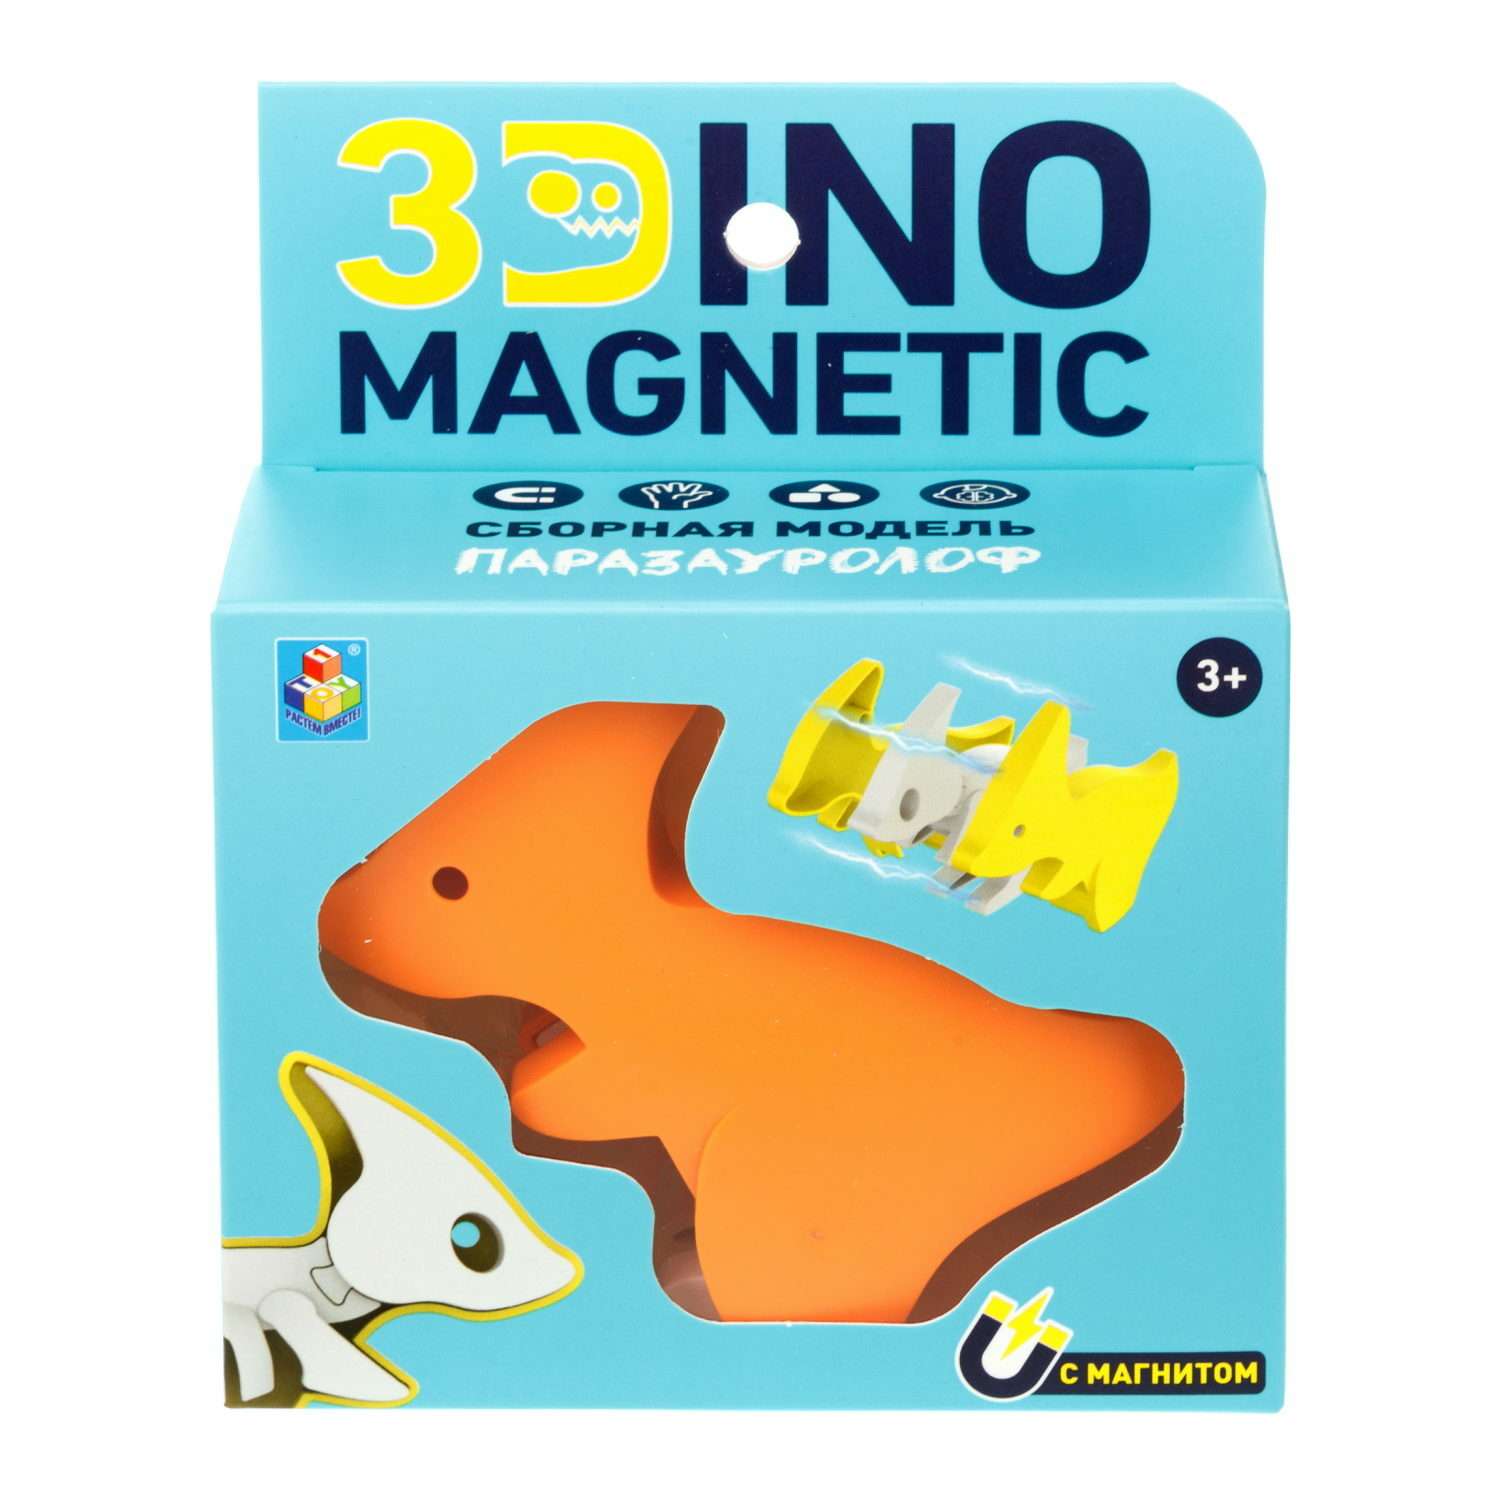 Сборная модель 1TOY 3Dino Magnetic динозавр Паразауролоф оранжевый - фото 2